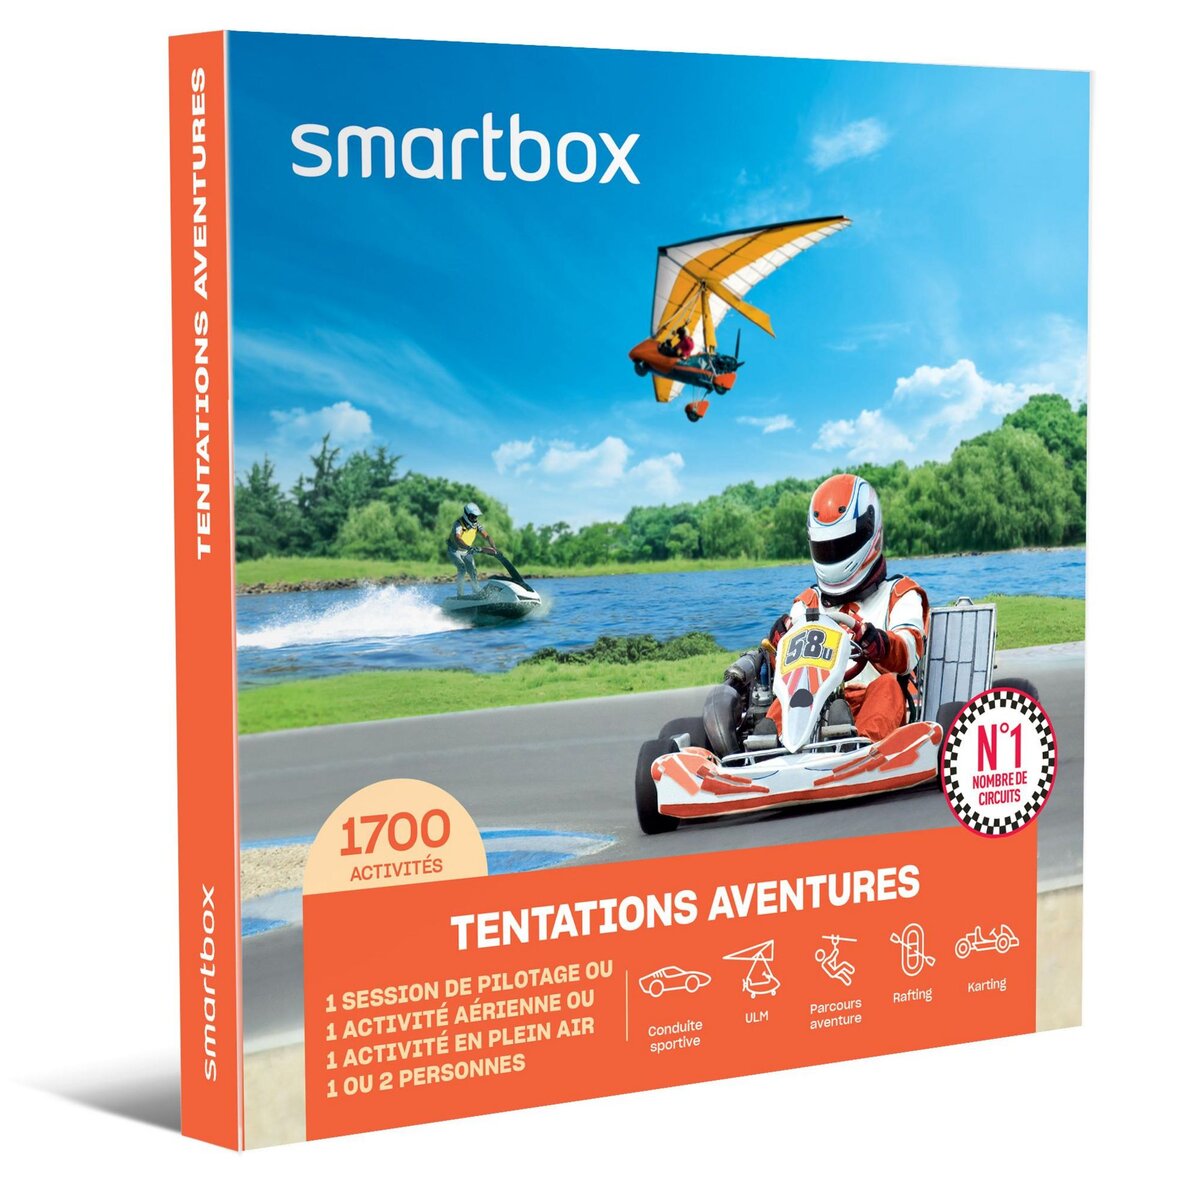 Smartbox Tentations aventures - Coffret Cadeau Sport & Aventure